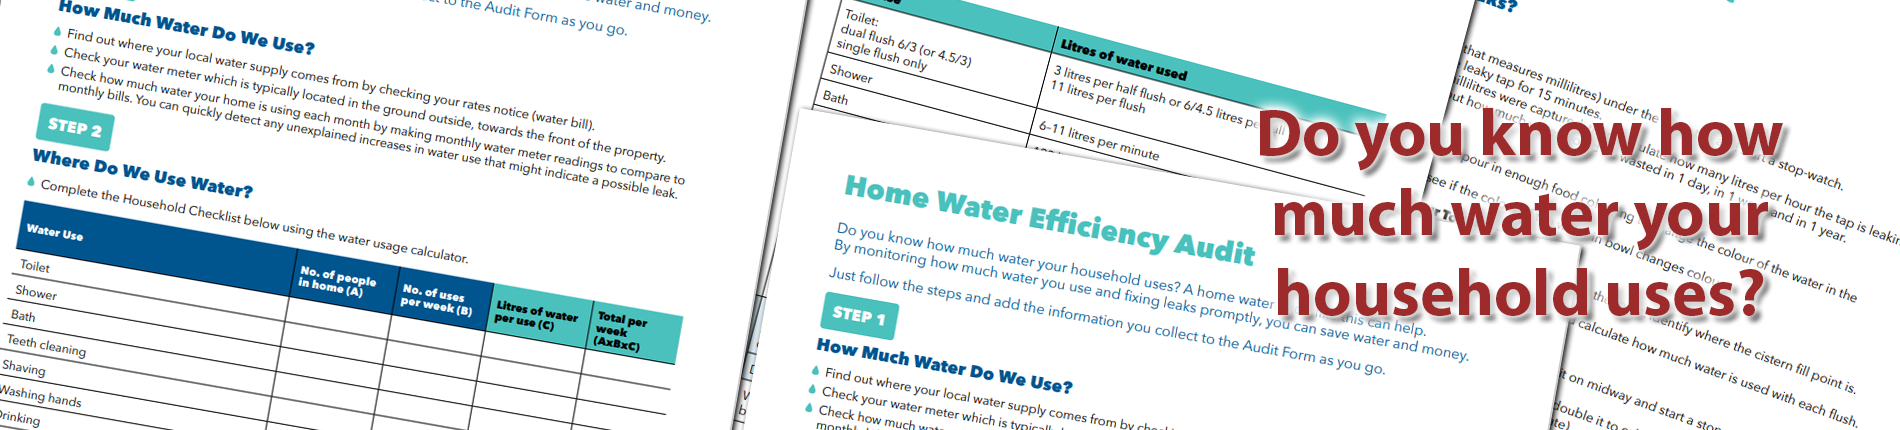 Home water efficiency audit